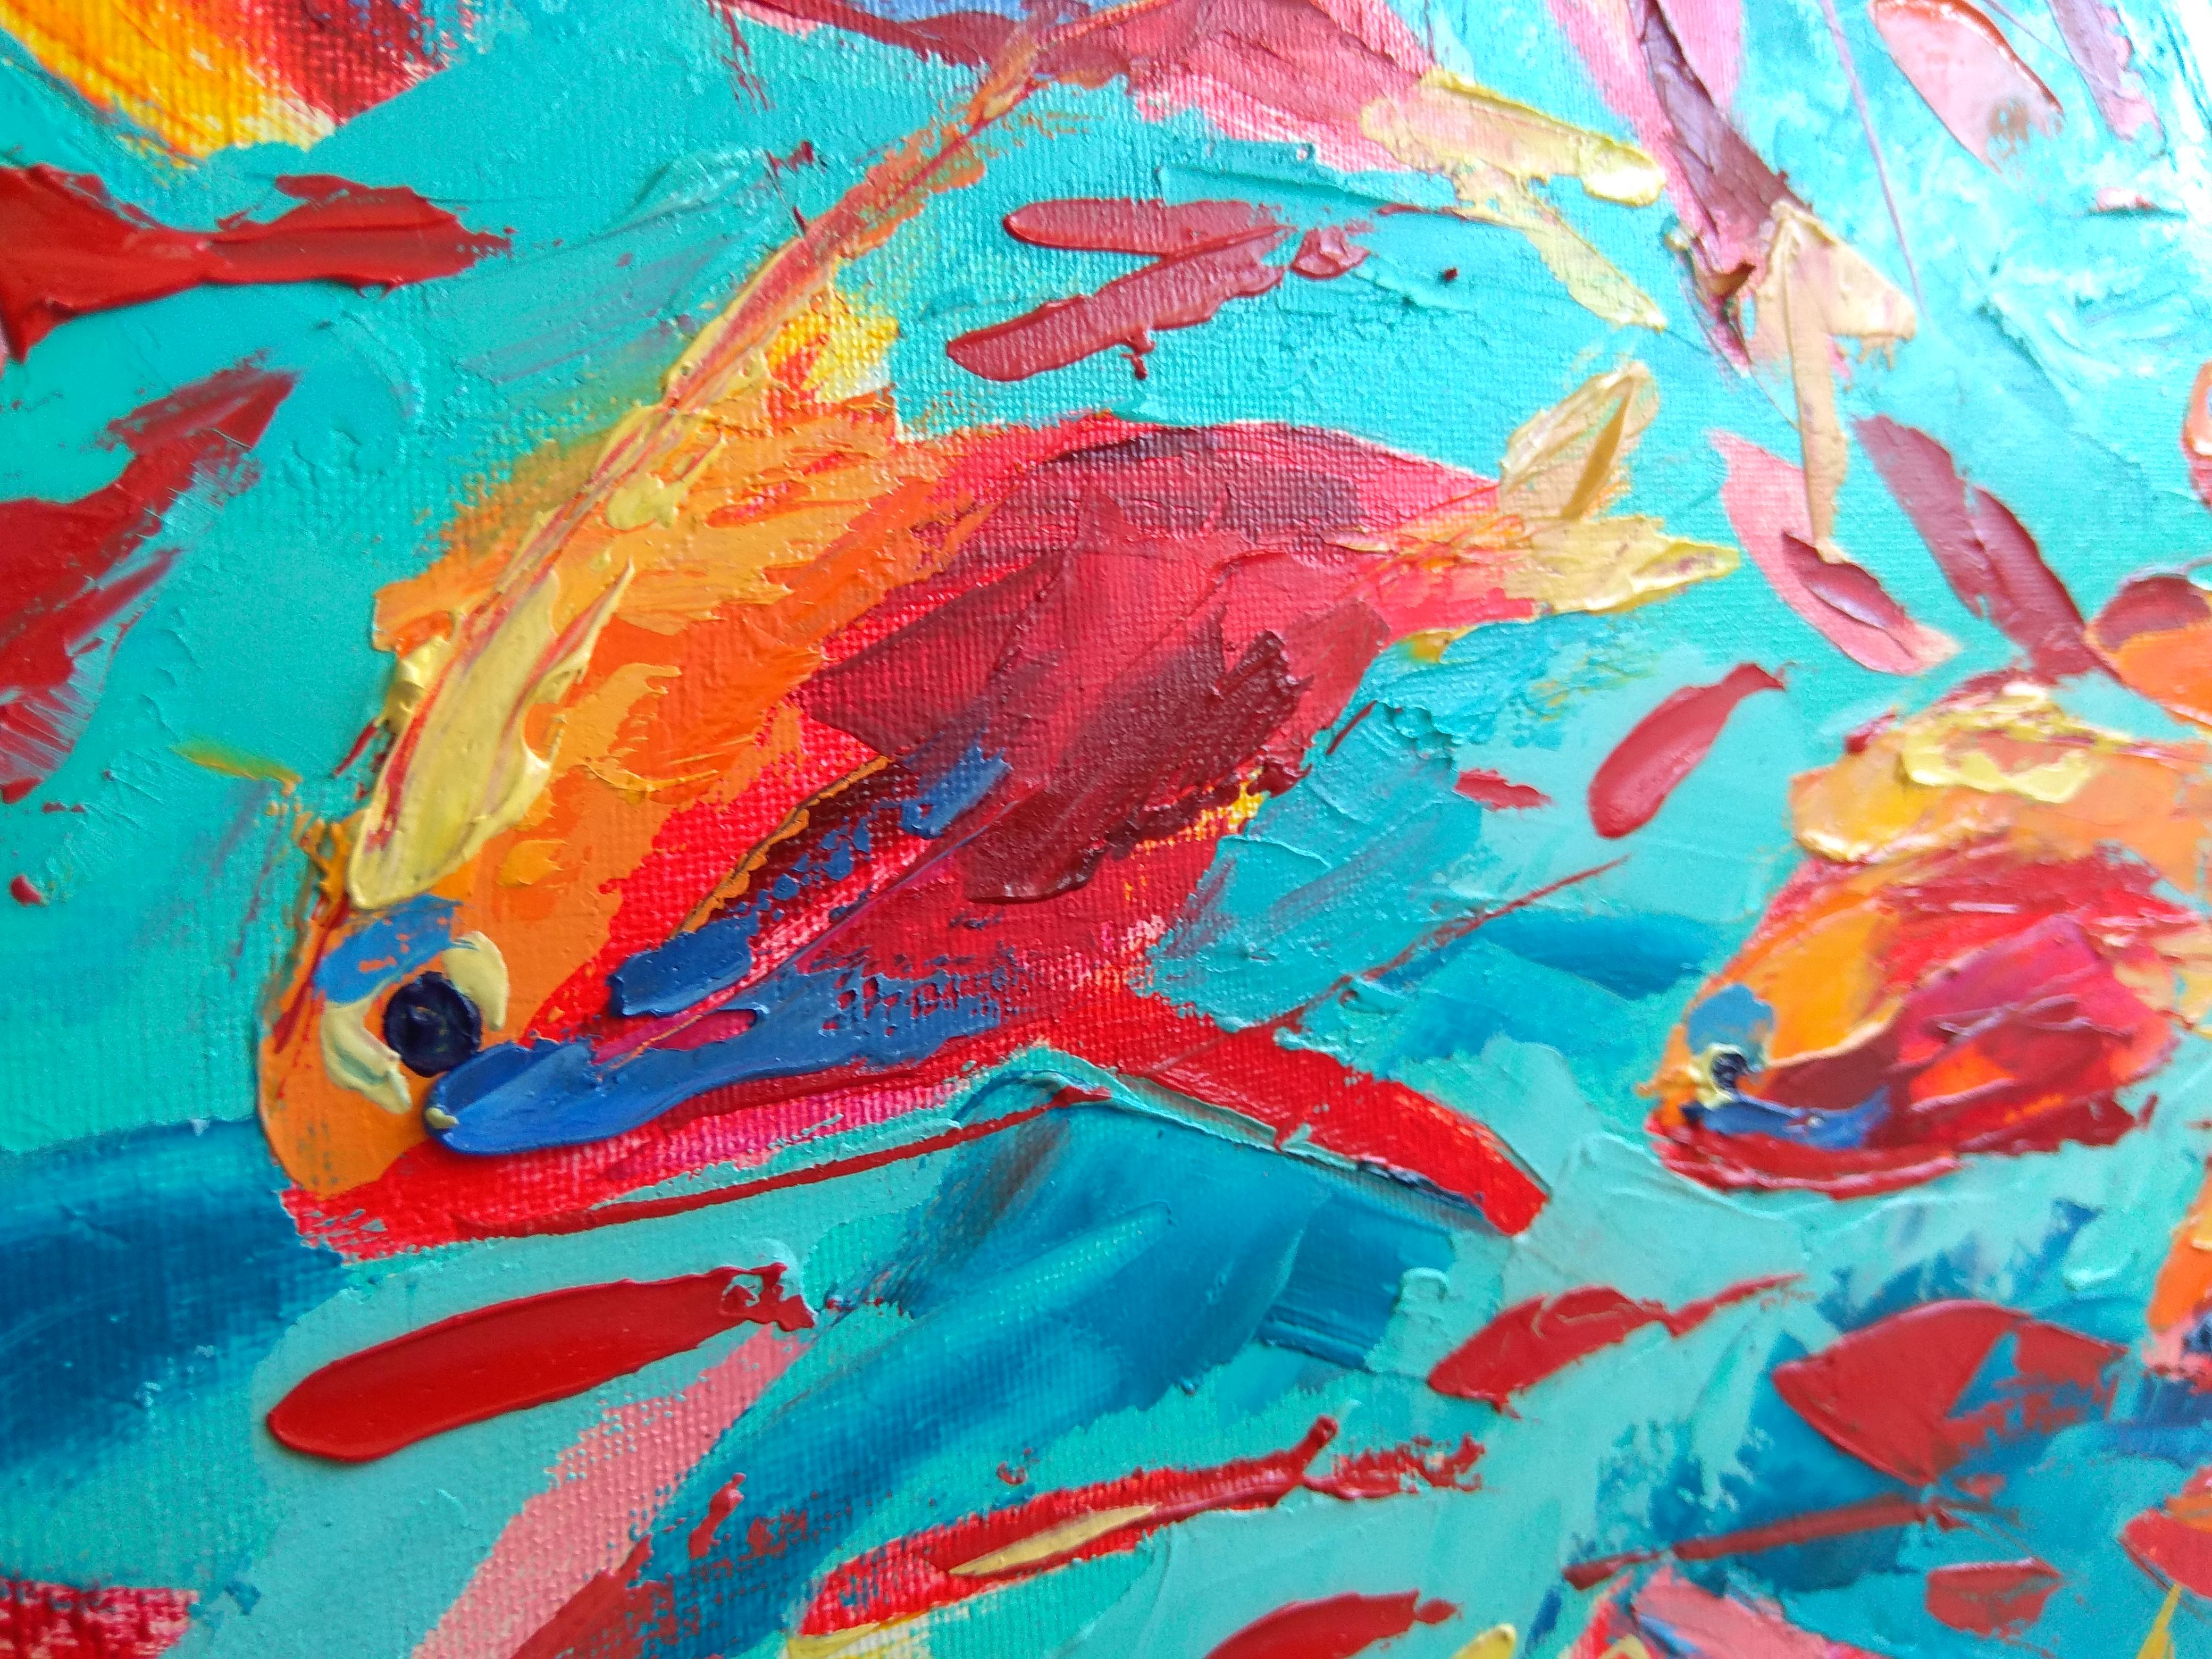 Red Fish Antias - Painting by Olga Nikitina